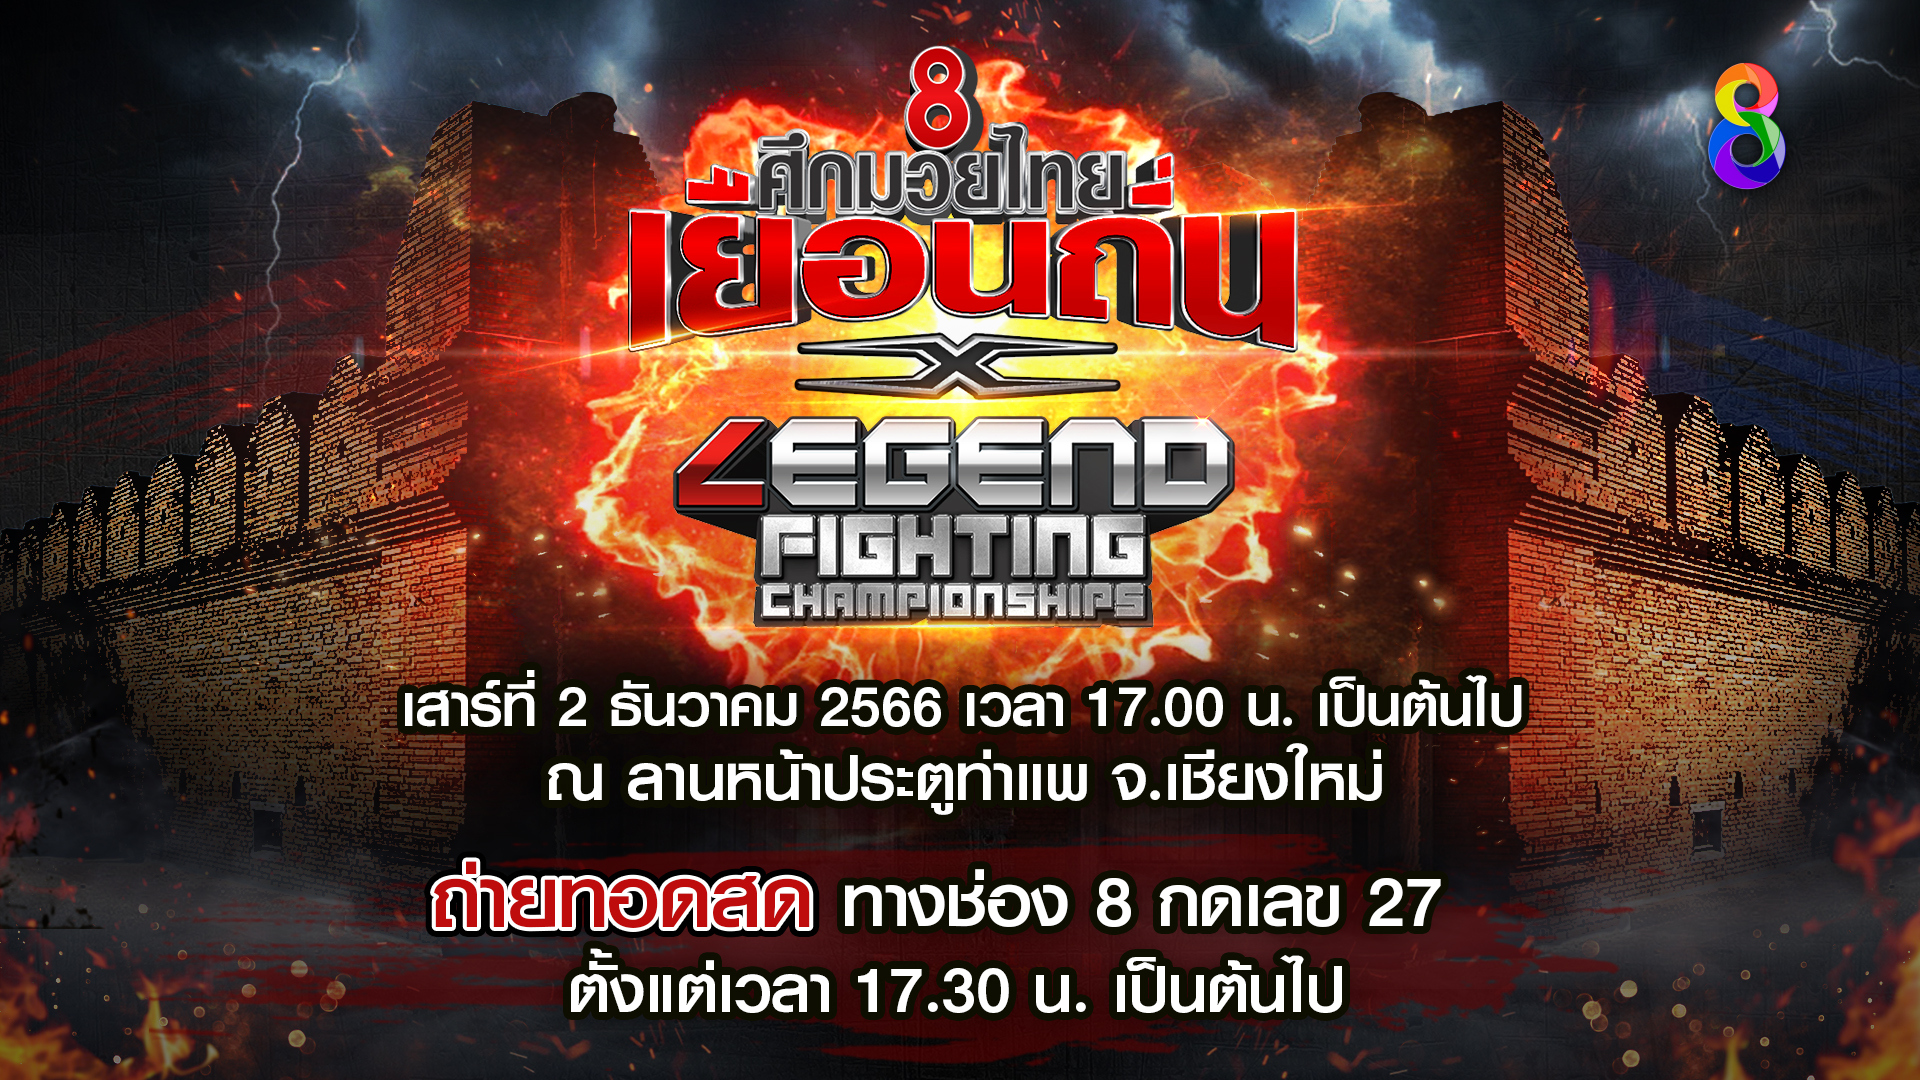 ช่อง 8 ศึกมวยไทยเยือนถิ่น จับมือ Legend Fighting Championships!!